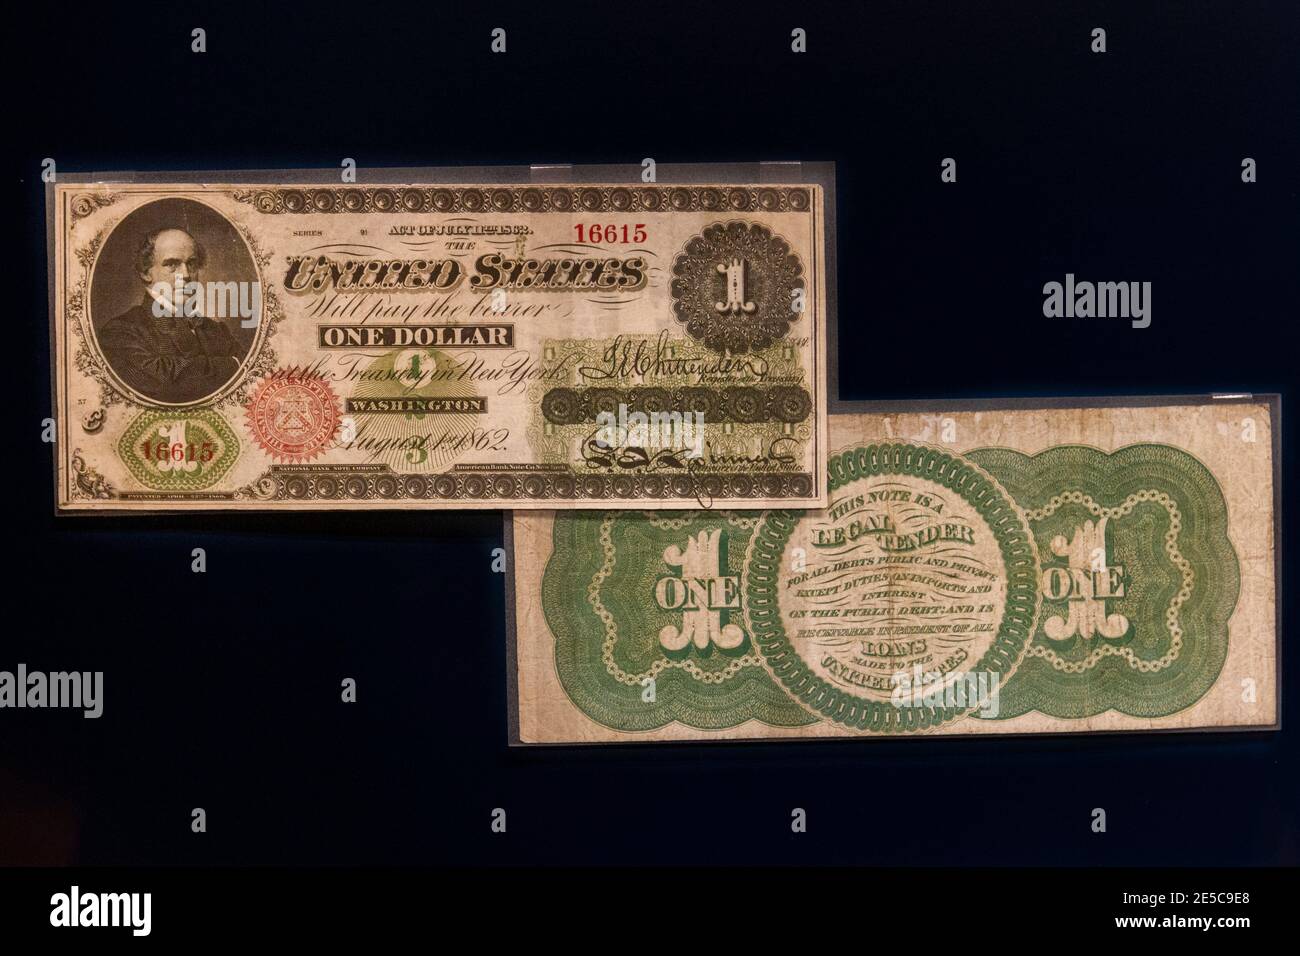 Eine US-Schatzkammer-1-Dollar-Note (1862), der erste "Greenback" mit grünem Hinterdruck, The Money Gallery, Ashmolean Museum, Oxford, Großbritannien. Stockfoto